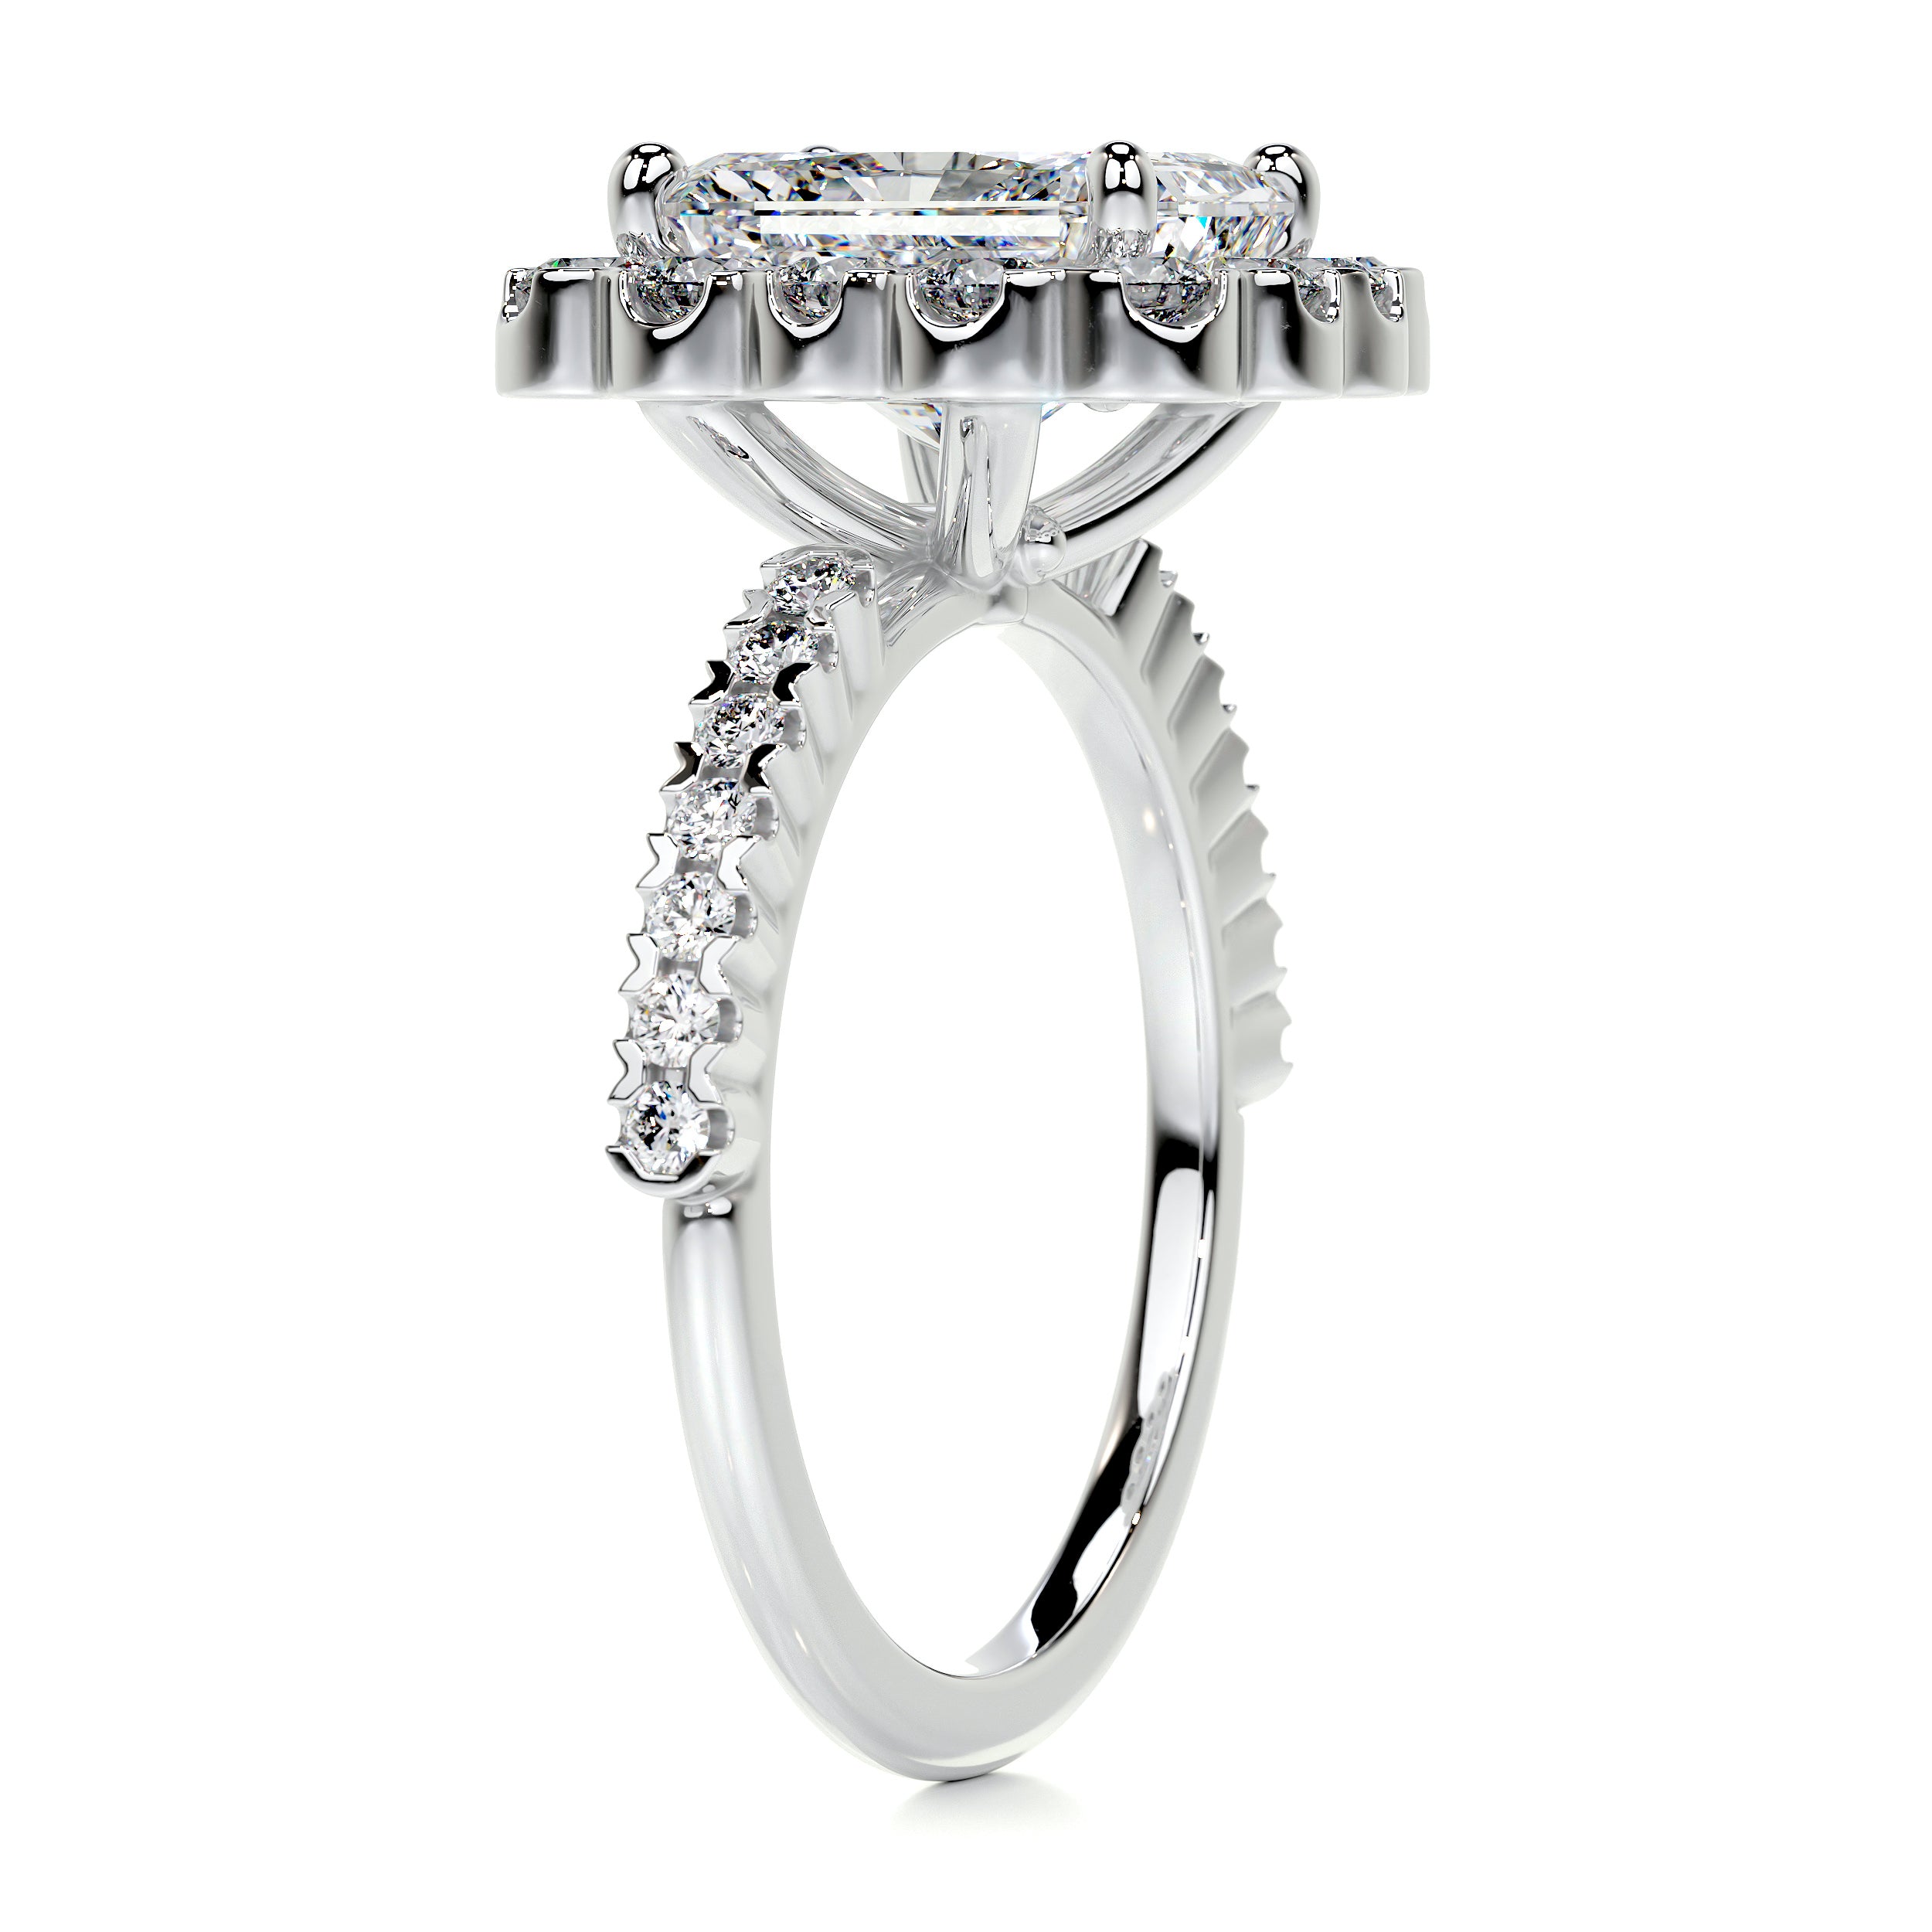 Sherry Diamond Engagement Ring   (2.5 Carat) -14K White Gold